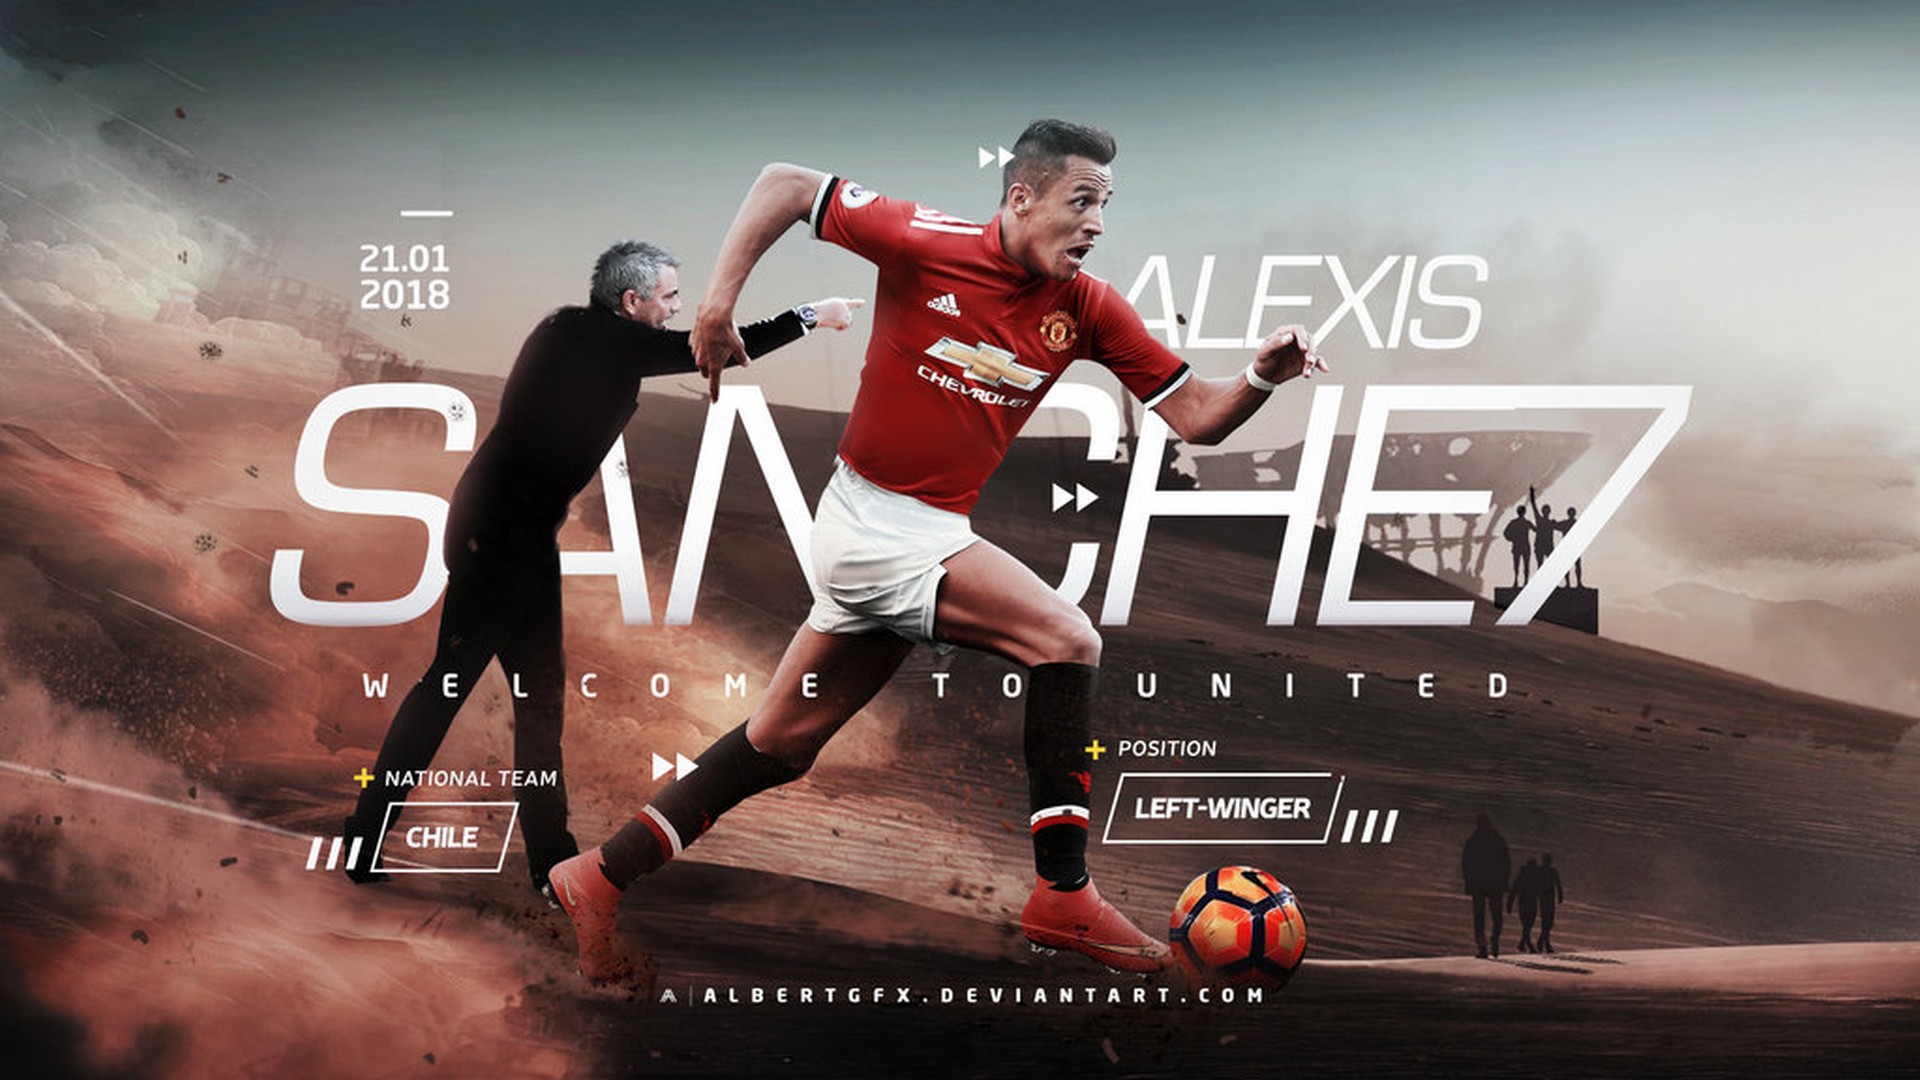 Alexis Sanchez 7 Manchester United Wallpaper Hd - Alexis Sanchez Man United , HD Wallpaper & Backgrounds